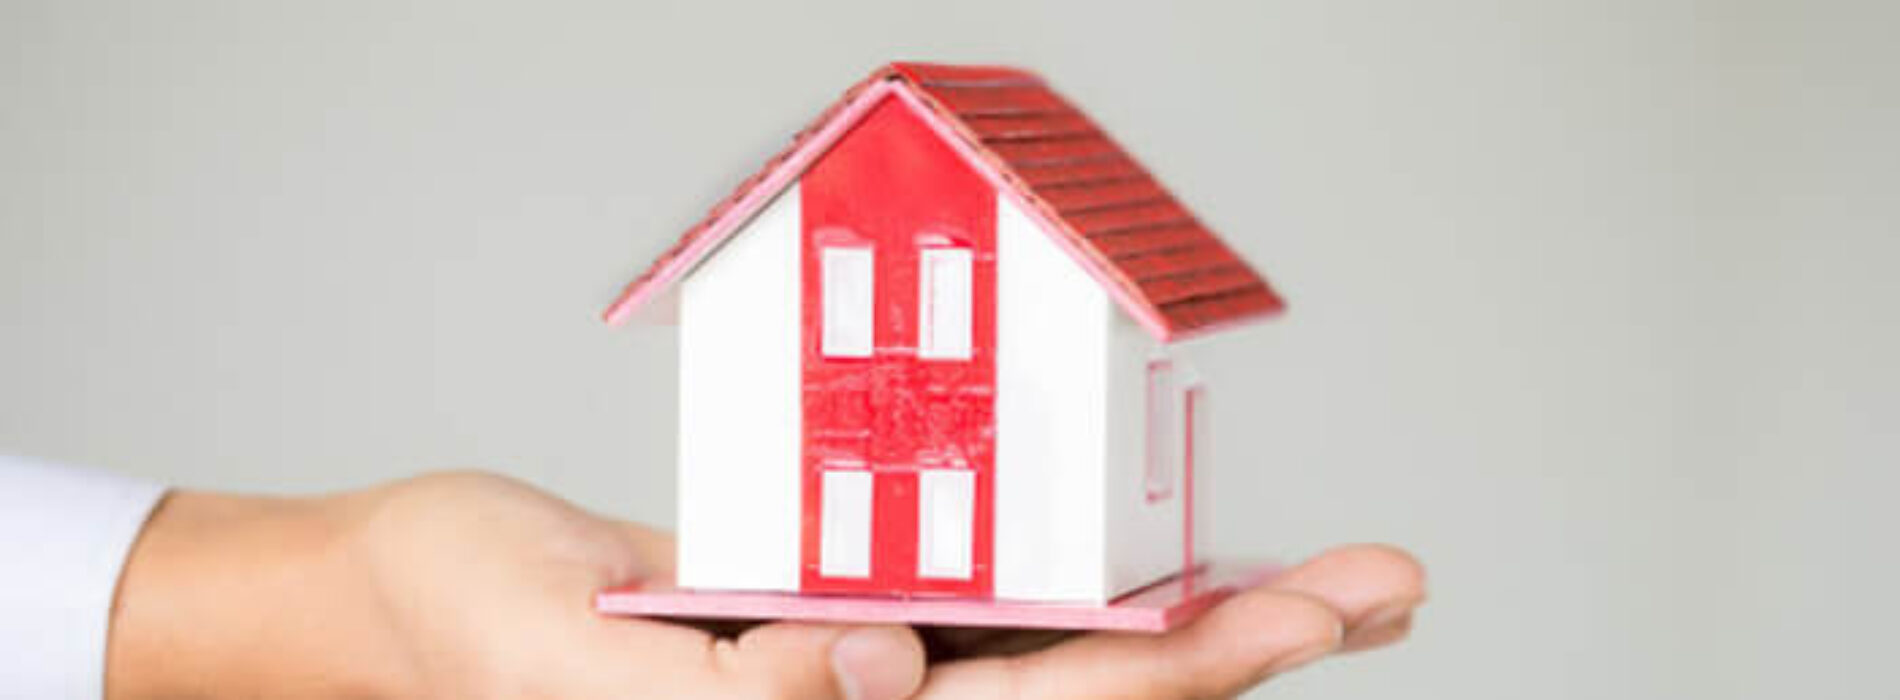 Jak przekazać kredyt hipoteczny po rozwodzie? Formalności i informacje